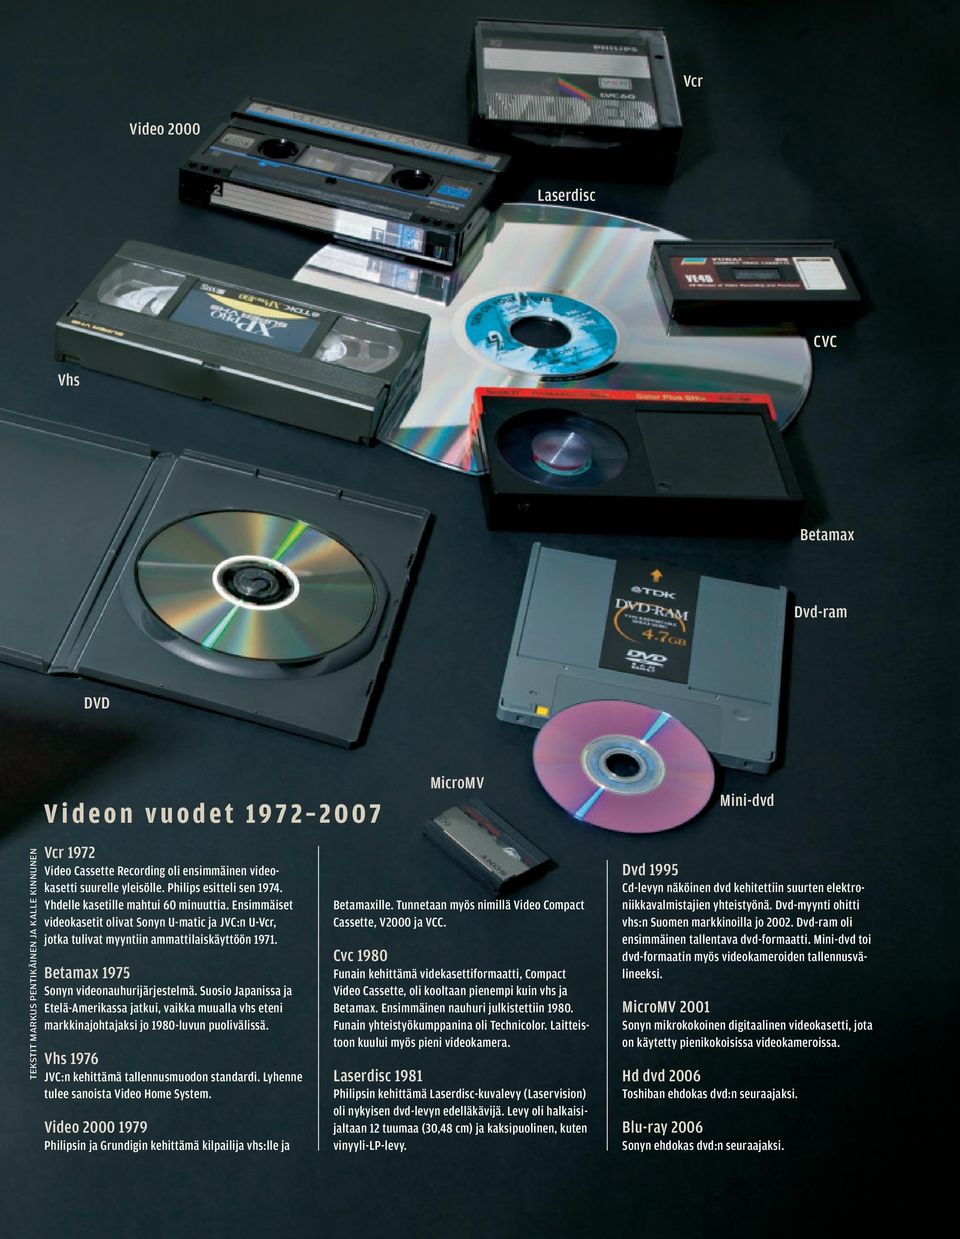 Betamax 1975 Sonyn videonauhurijärjestelmä. Suosio Japanissa ja Etelä-Amerikassa jatkui, vaikka muualla vhs eteni markkinajohtajaksi jo 1980-luvun puolivälissä.